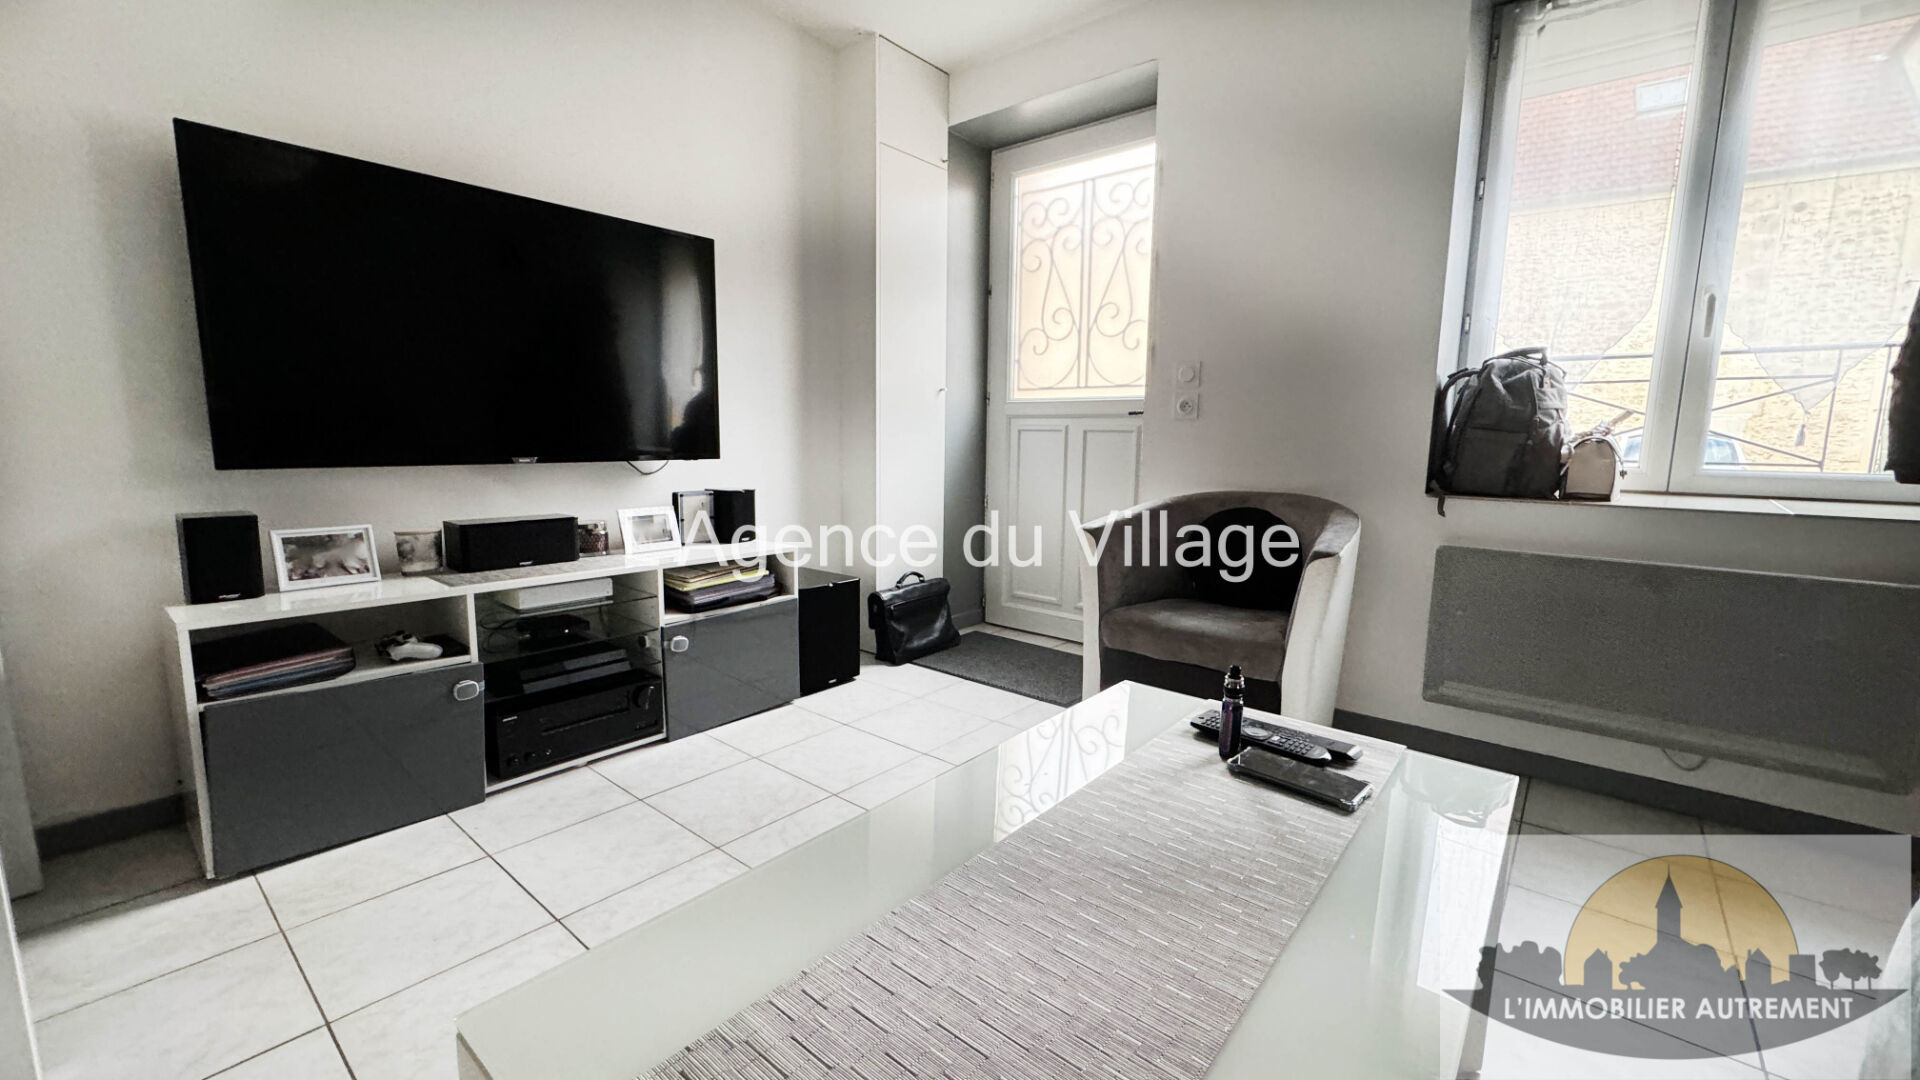 Appartement 4 pièces 66 m² Bornel